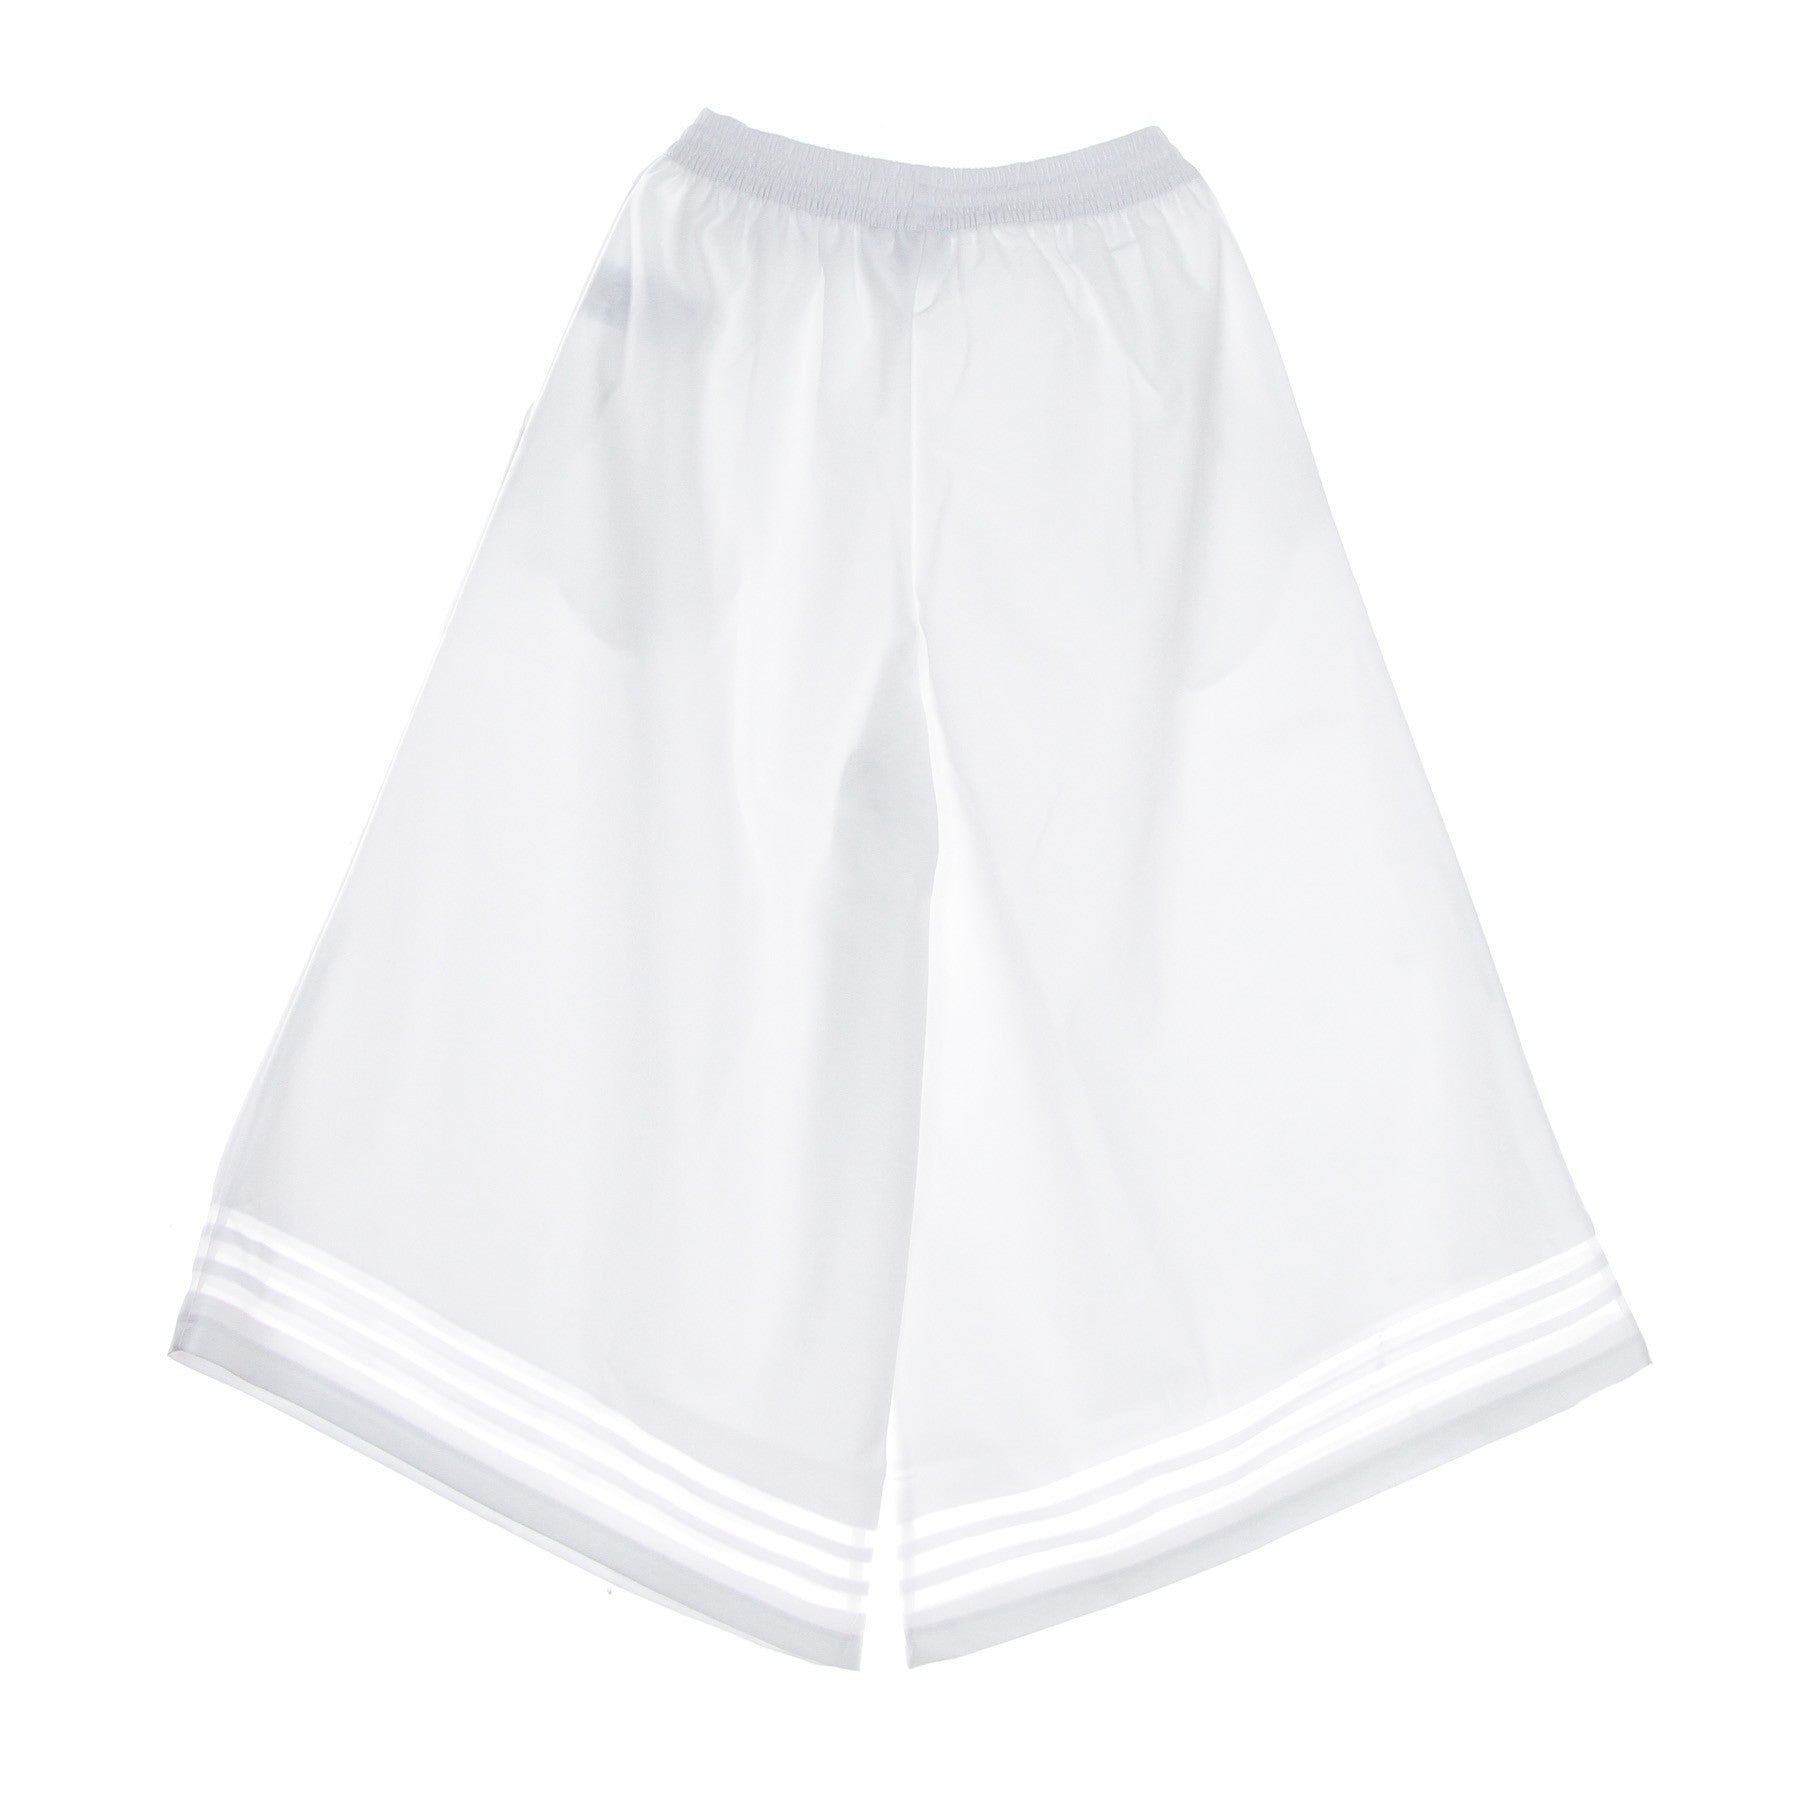 Long Women's 3/4 Trefoil Pant White